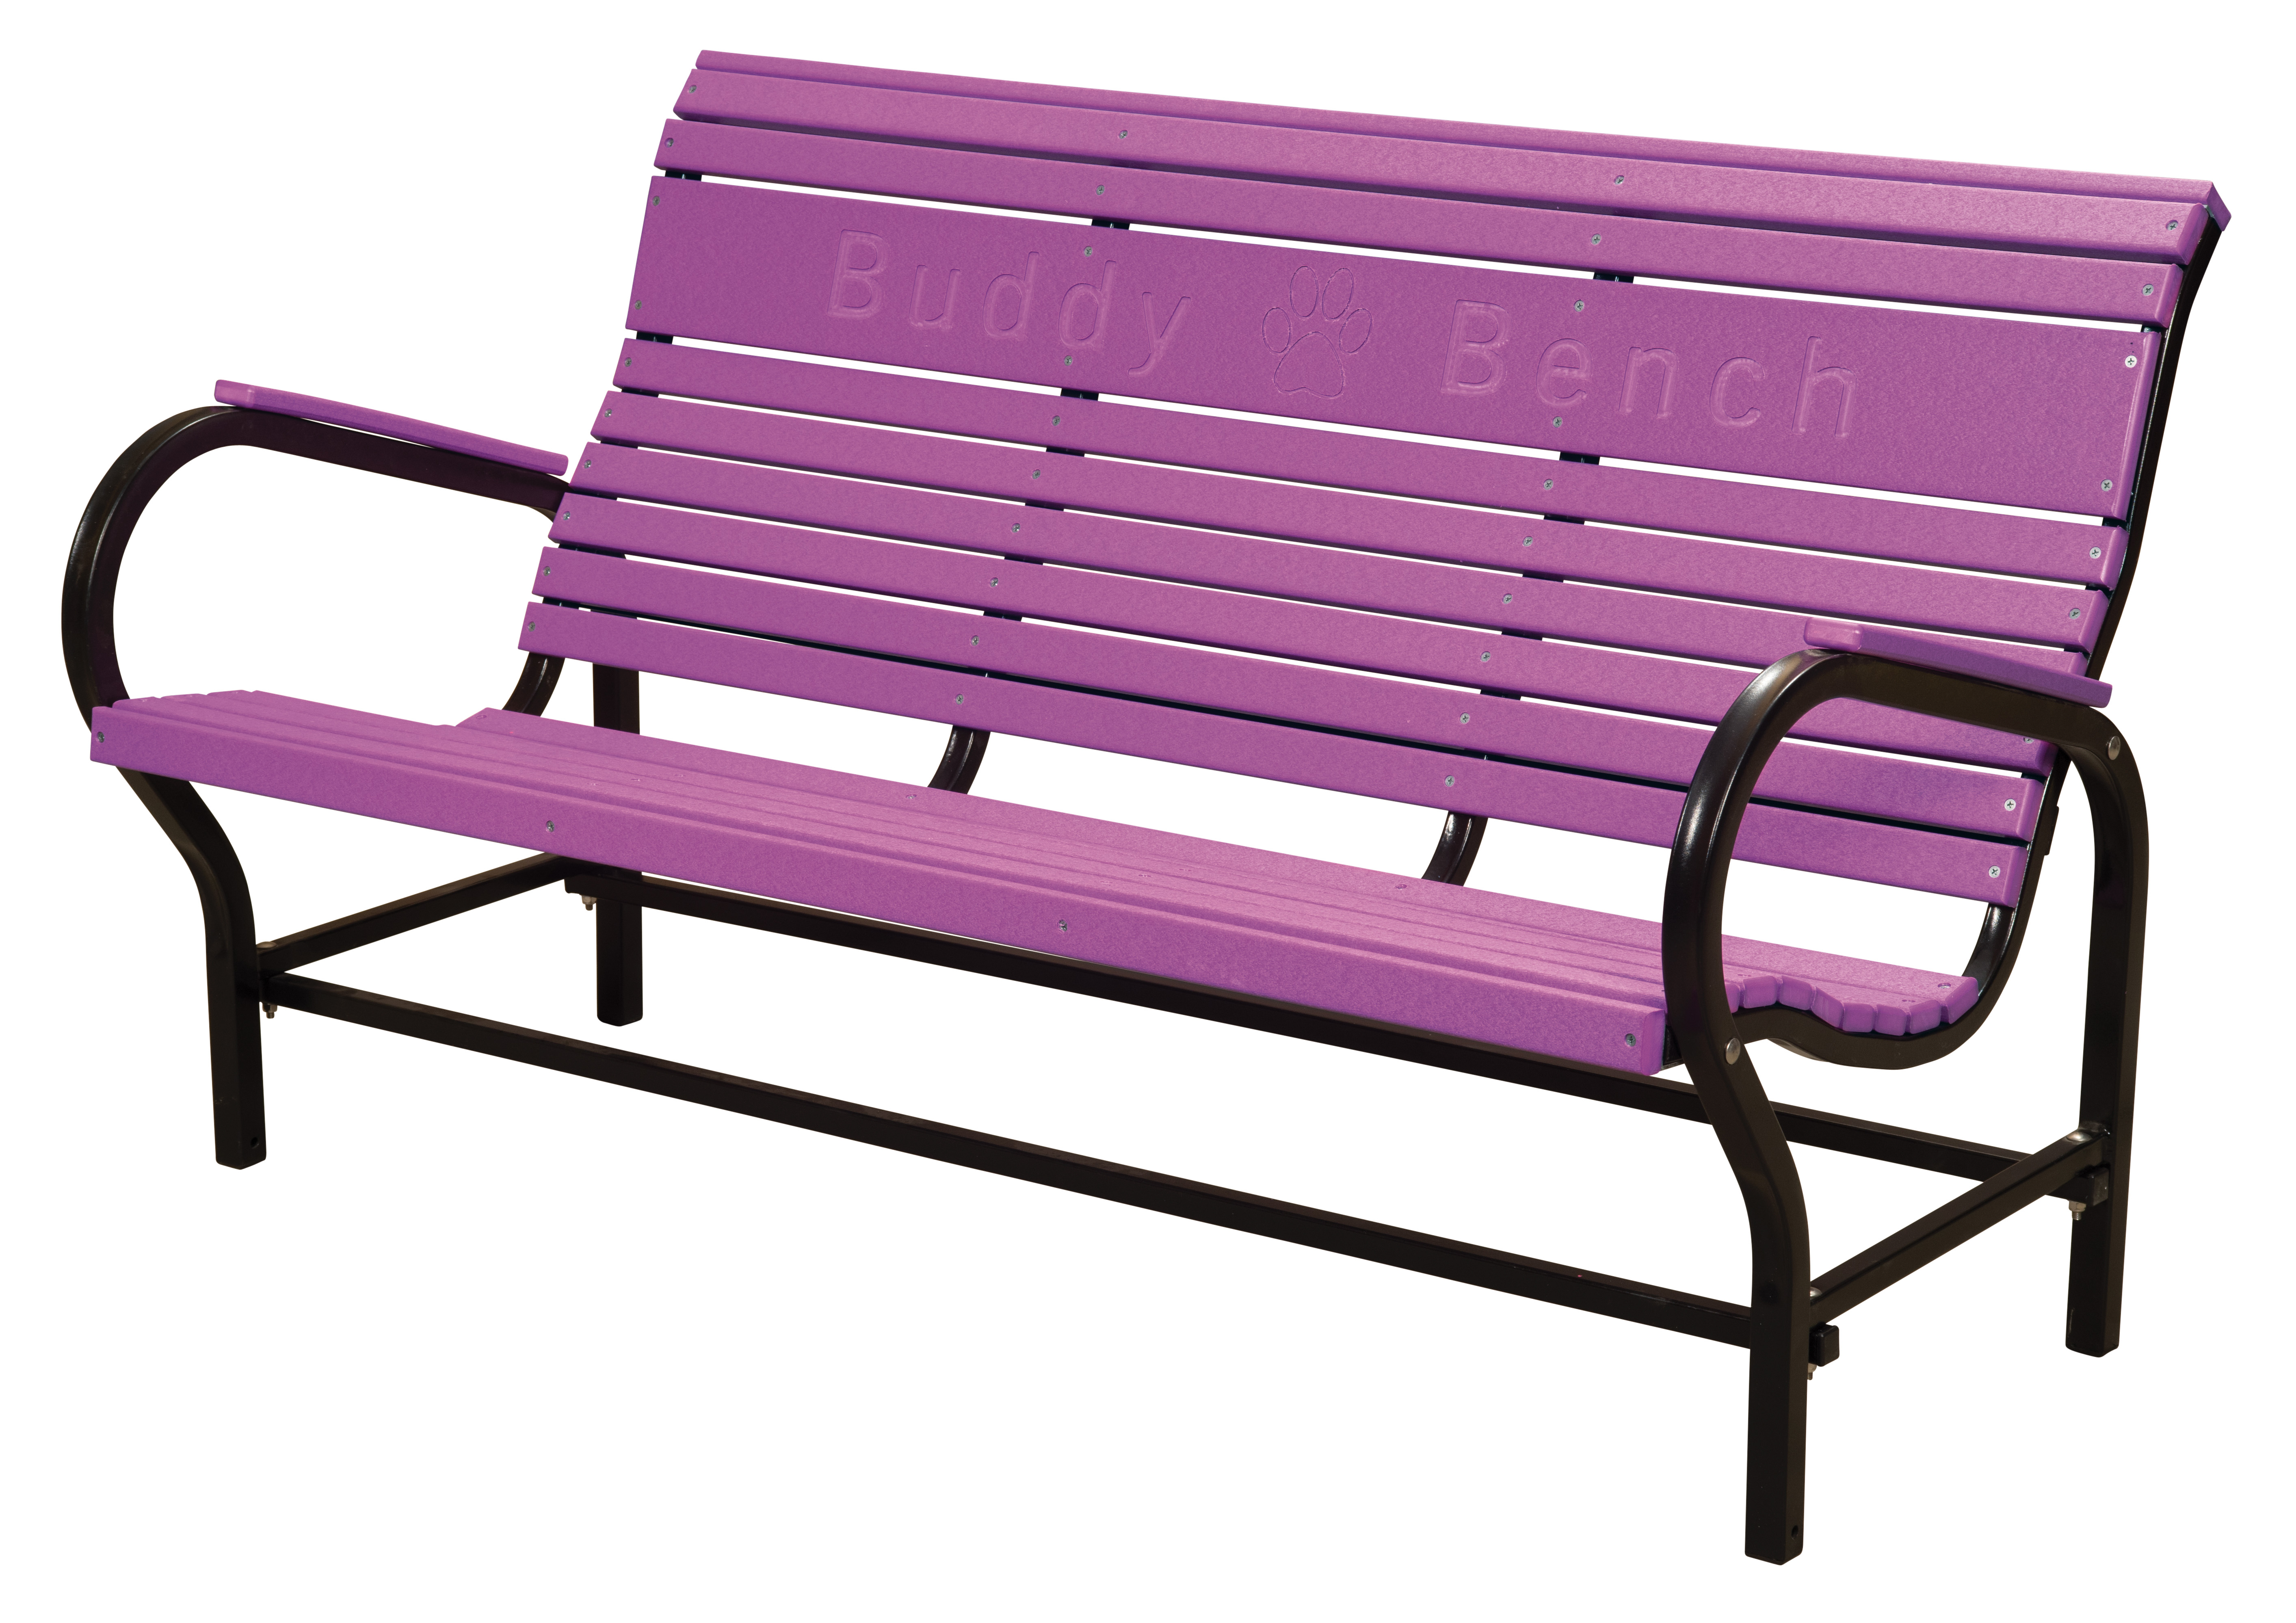 https://0201.nccdn.net/1_2/000/000/0cc/a42/la-patio-5-foot-bench-purple.jpg